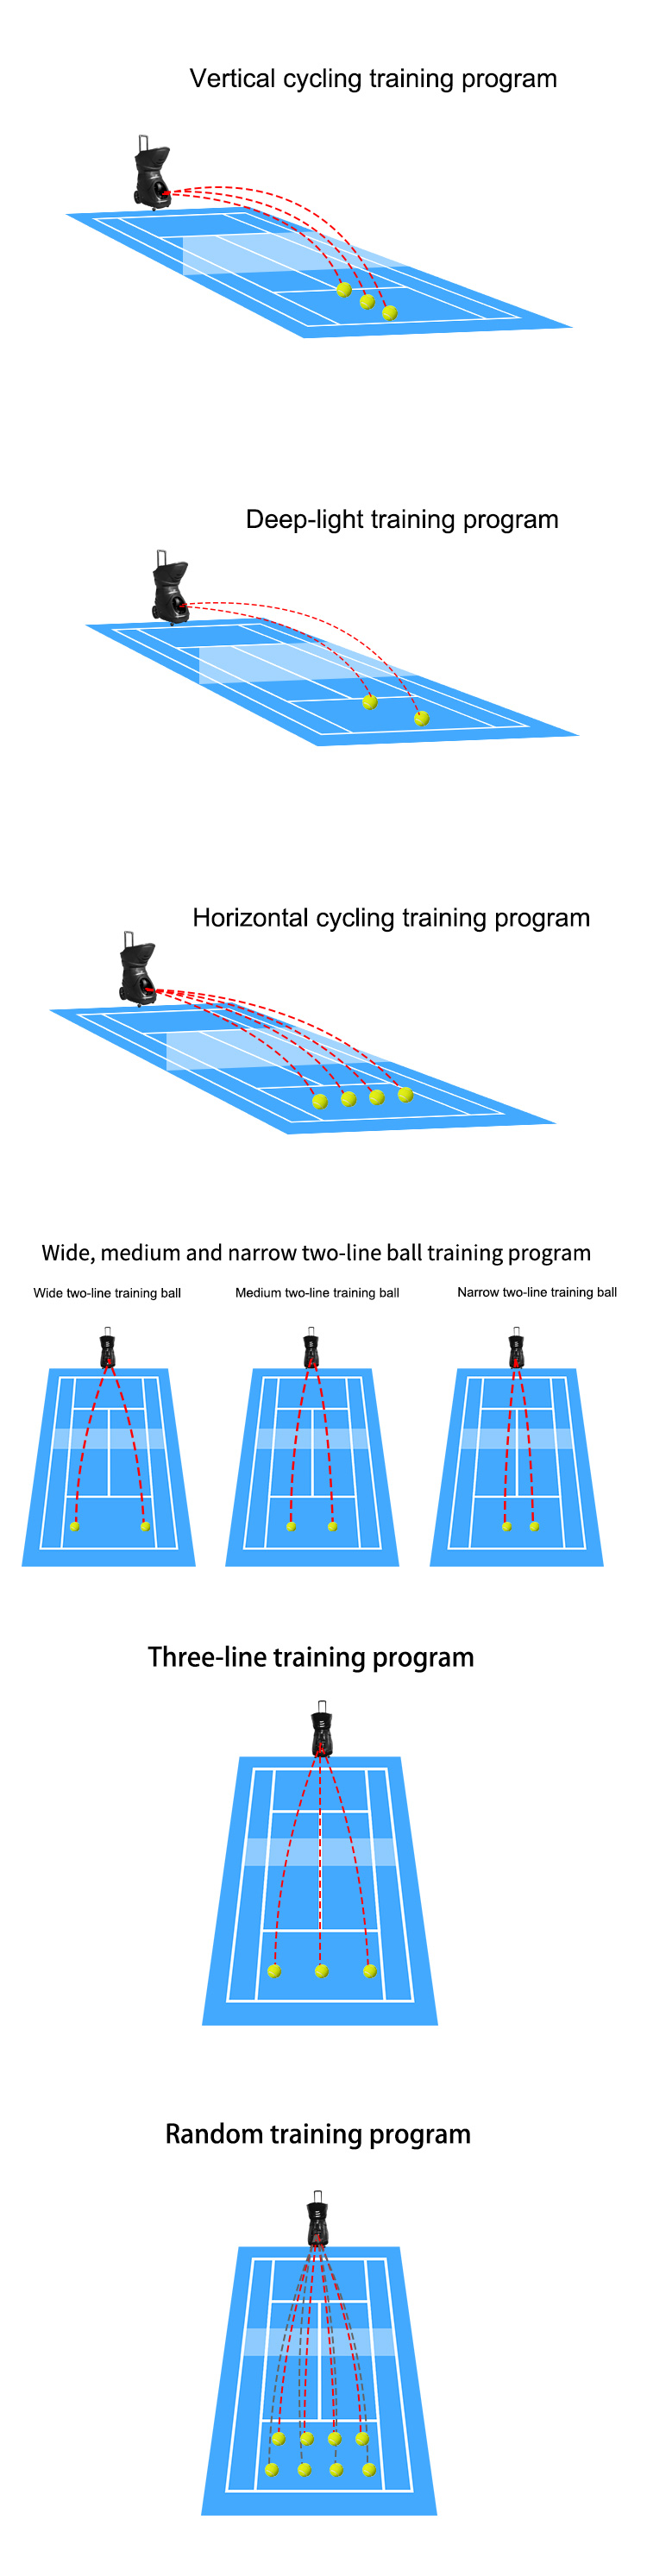 tennis ball robot